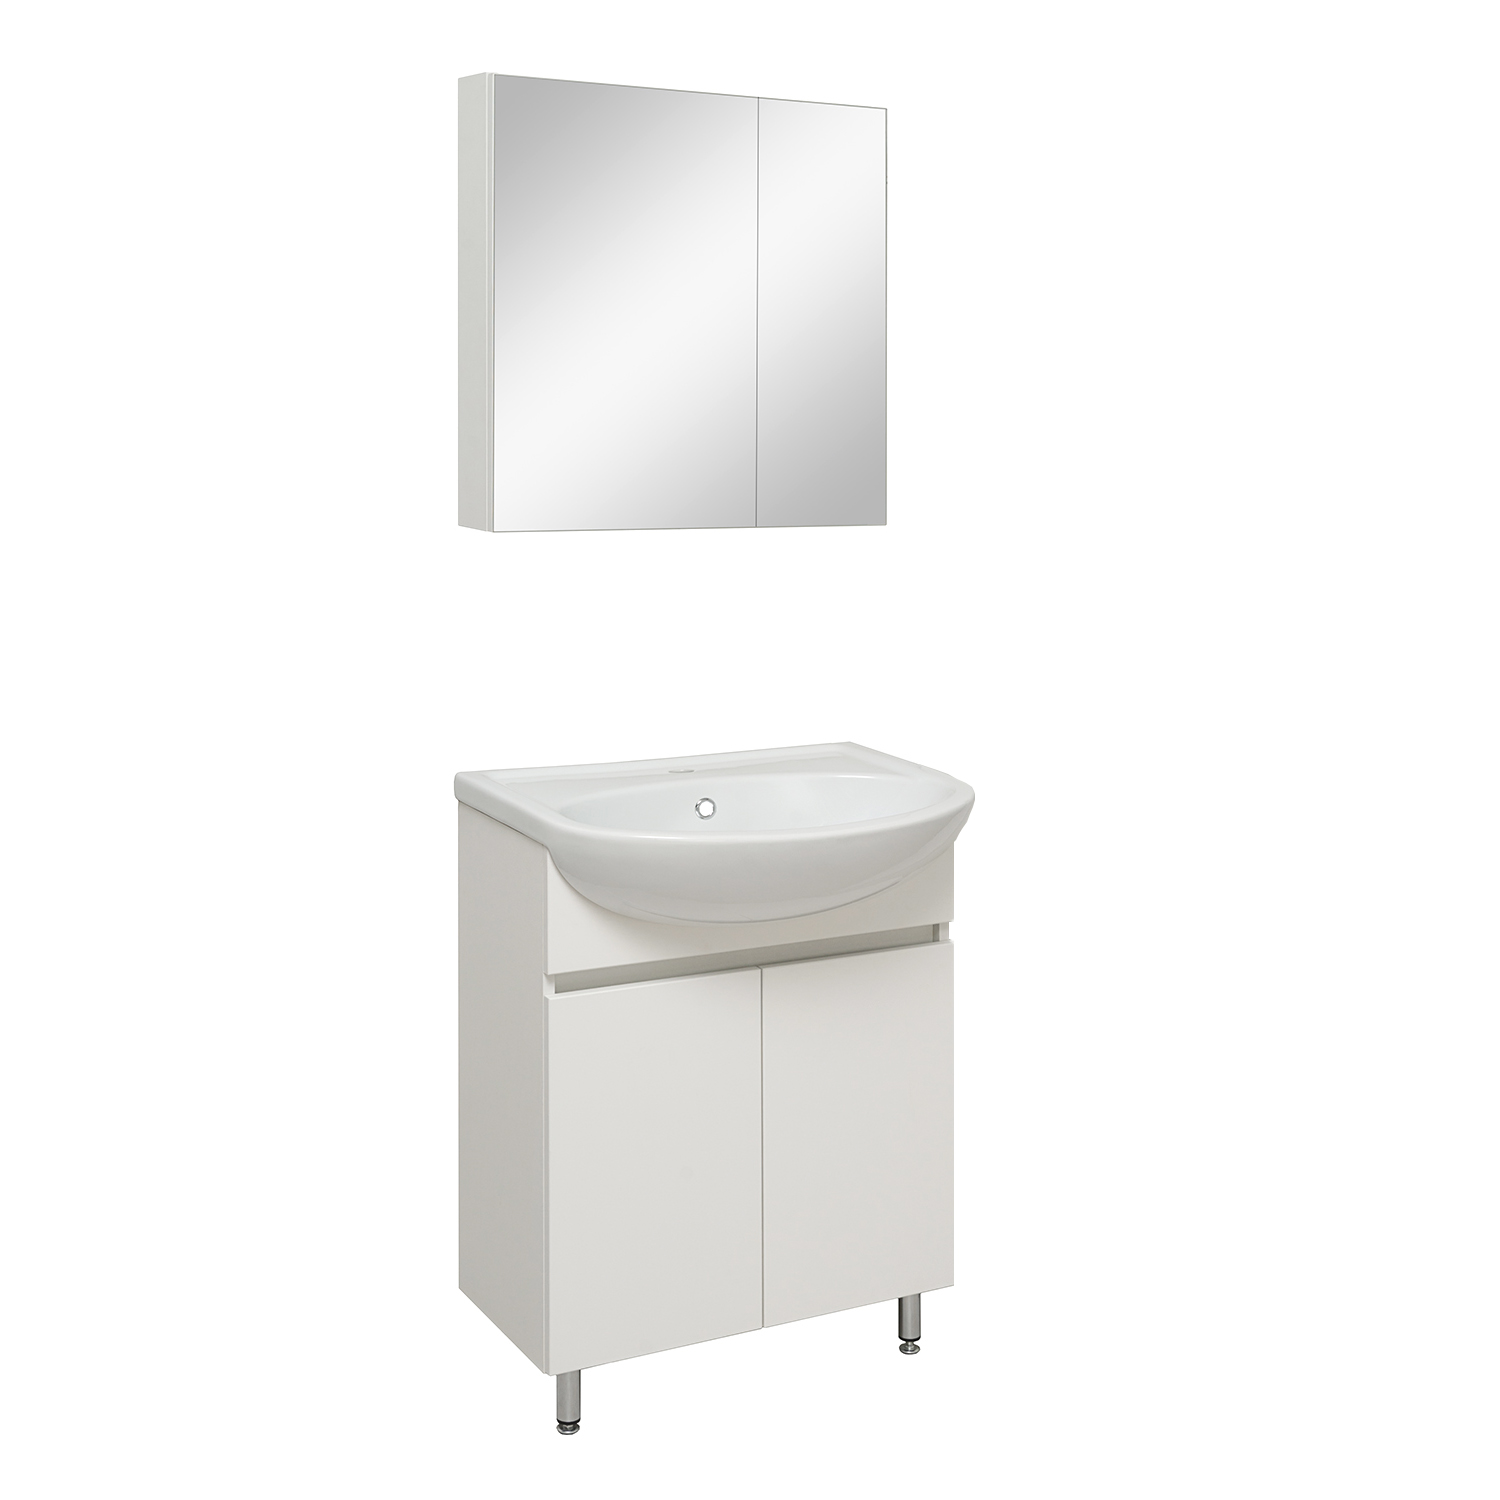 Мебель для ванной комнаты Runo Лада 61 см напольная, белая, цвет белый 00-00001163 - фото 2